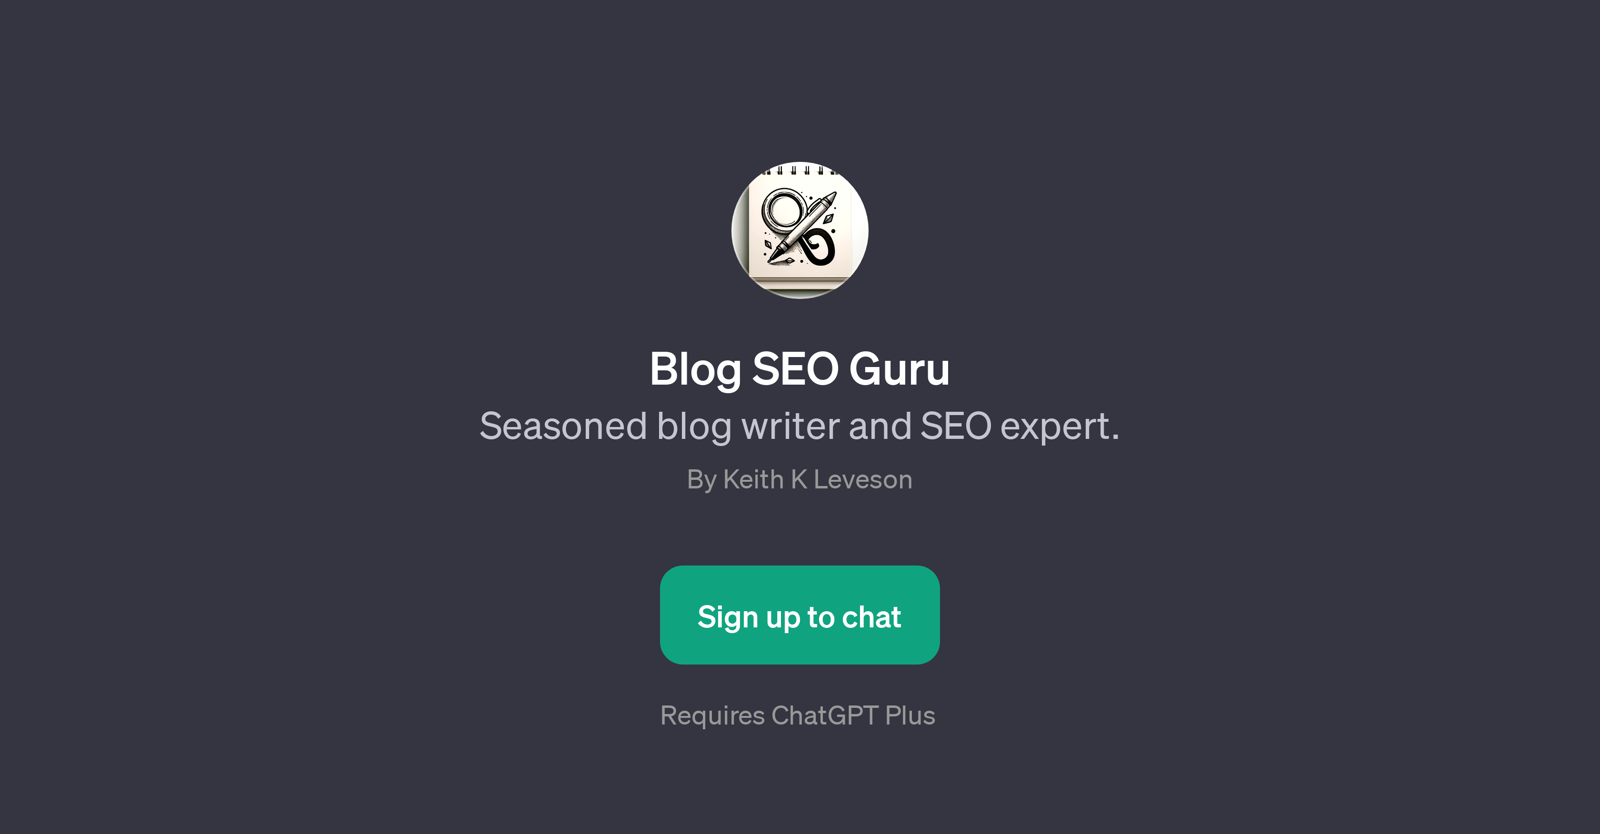 Blog SEO Guru website